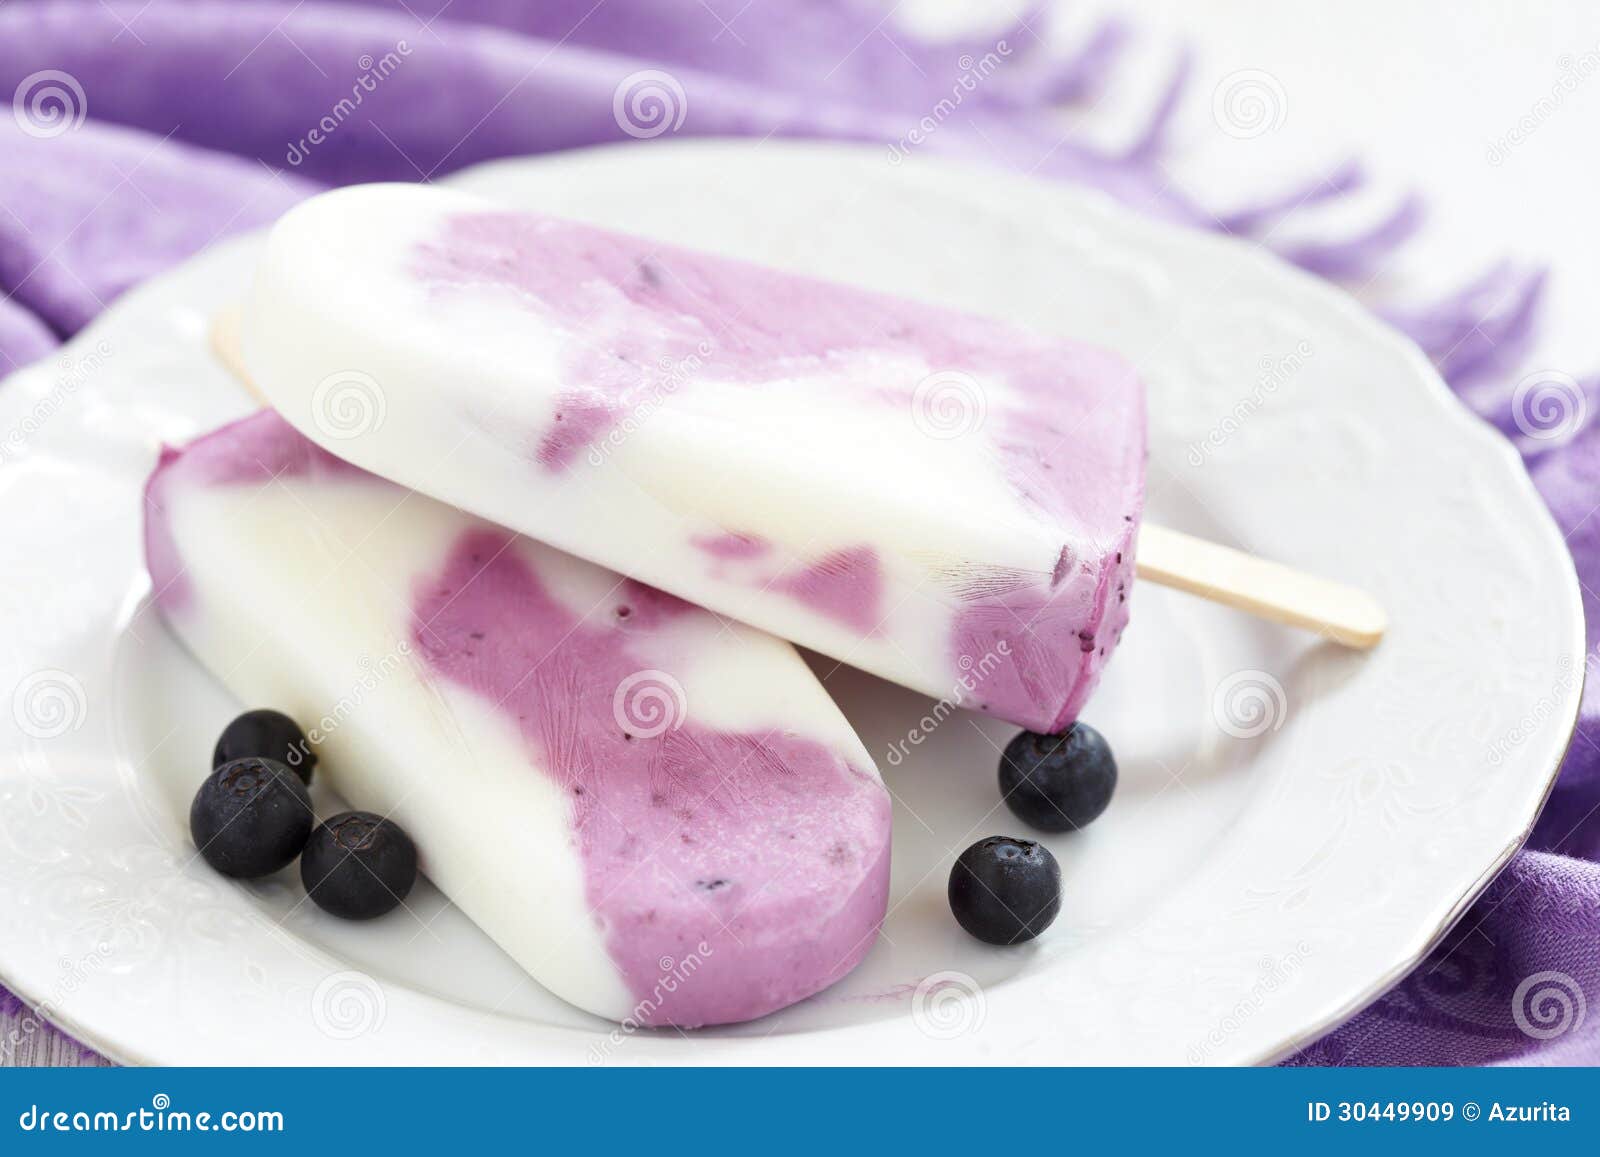 蓝莓奶油雪糕怎么做_蓝莓奶油雪糕的做法_菜菜籽麻麻酱_豆果美食